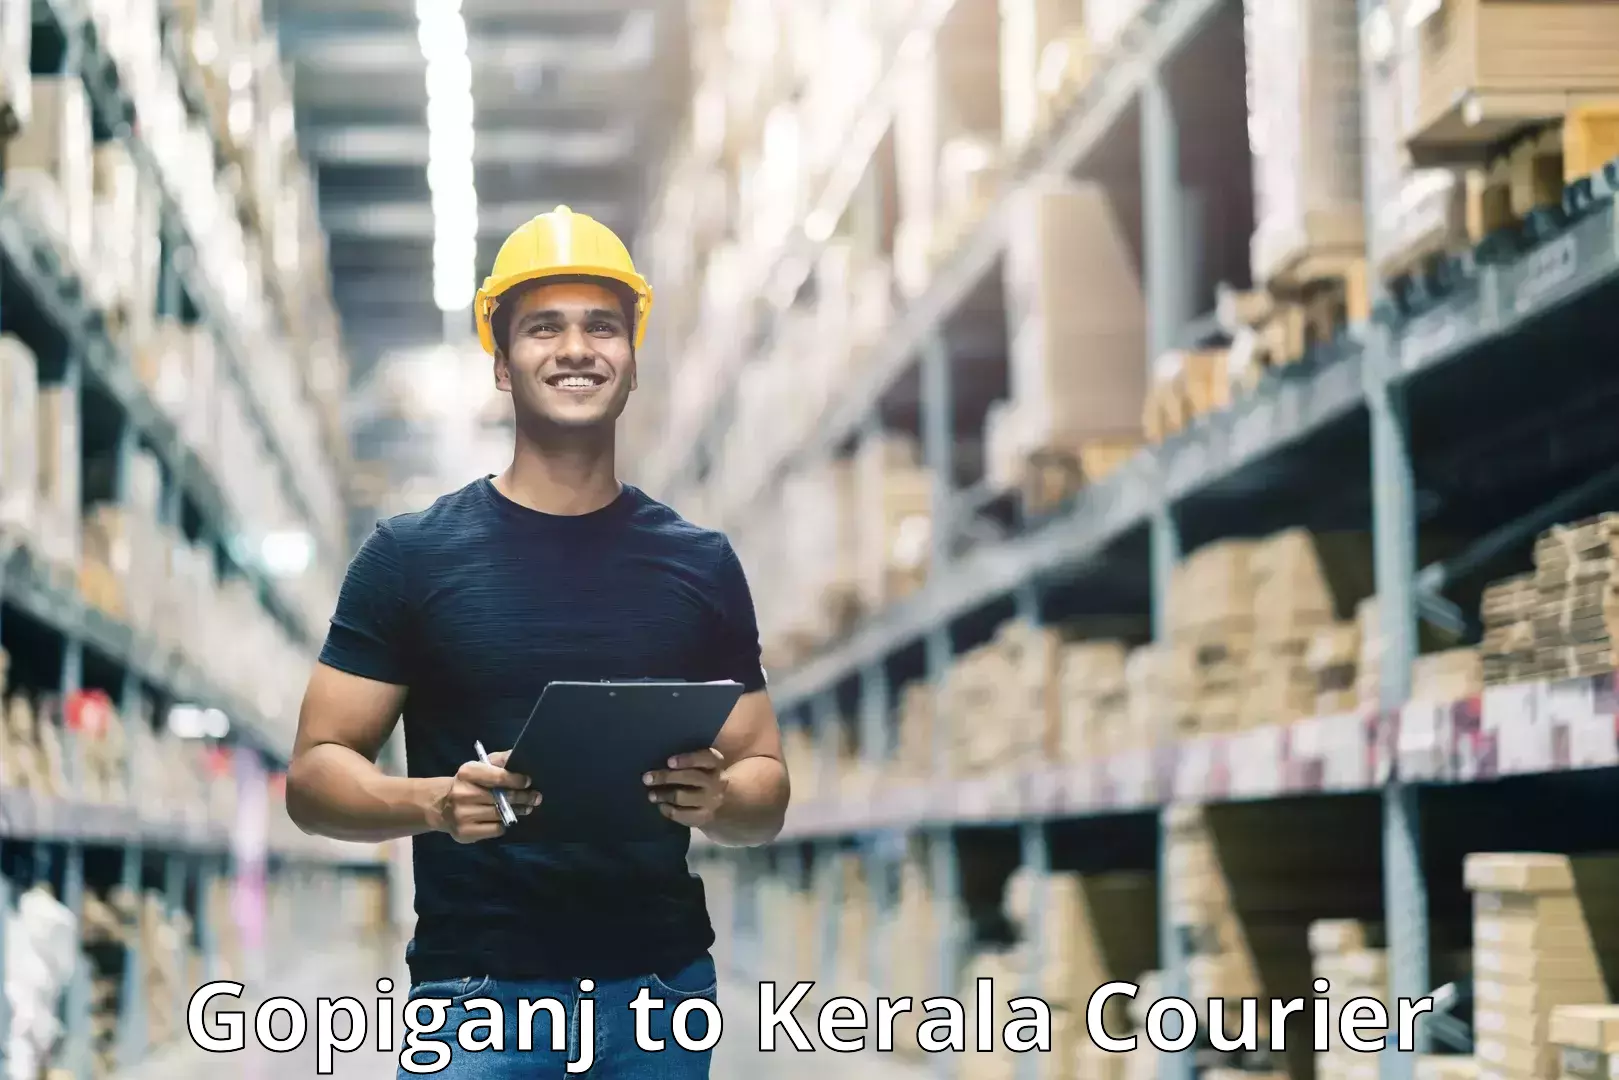 Flexible delivery scheduling in Gopiganj to Kerala